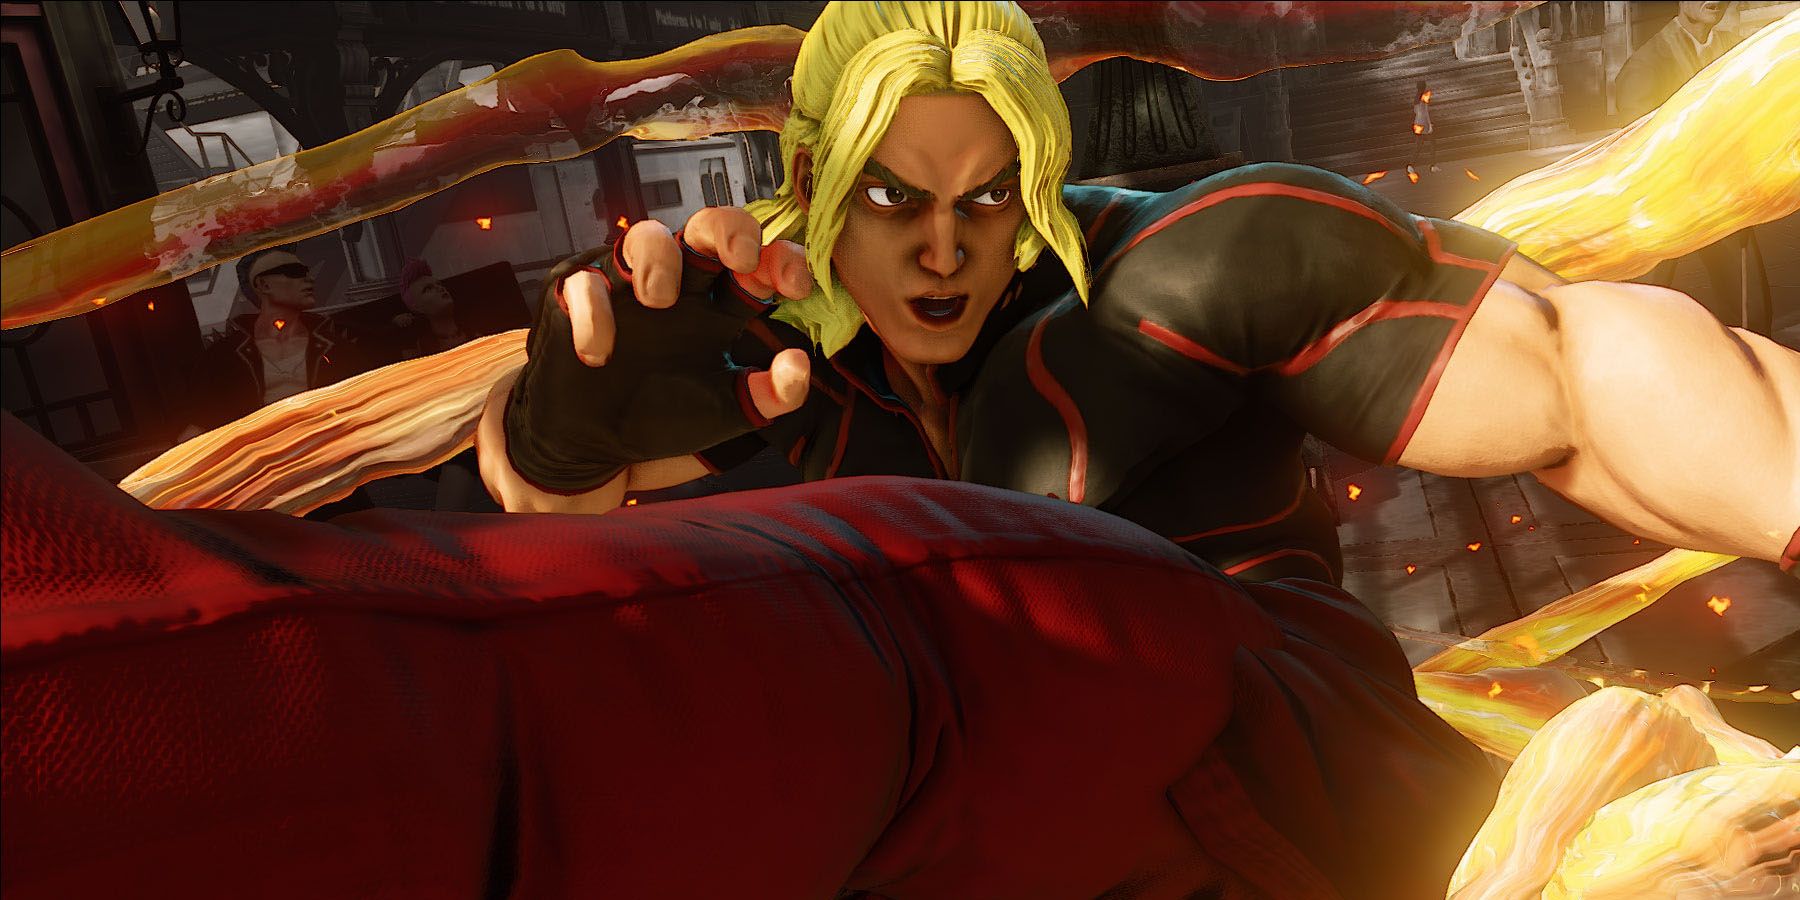 Ken in Street Fighter